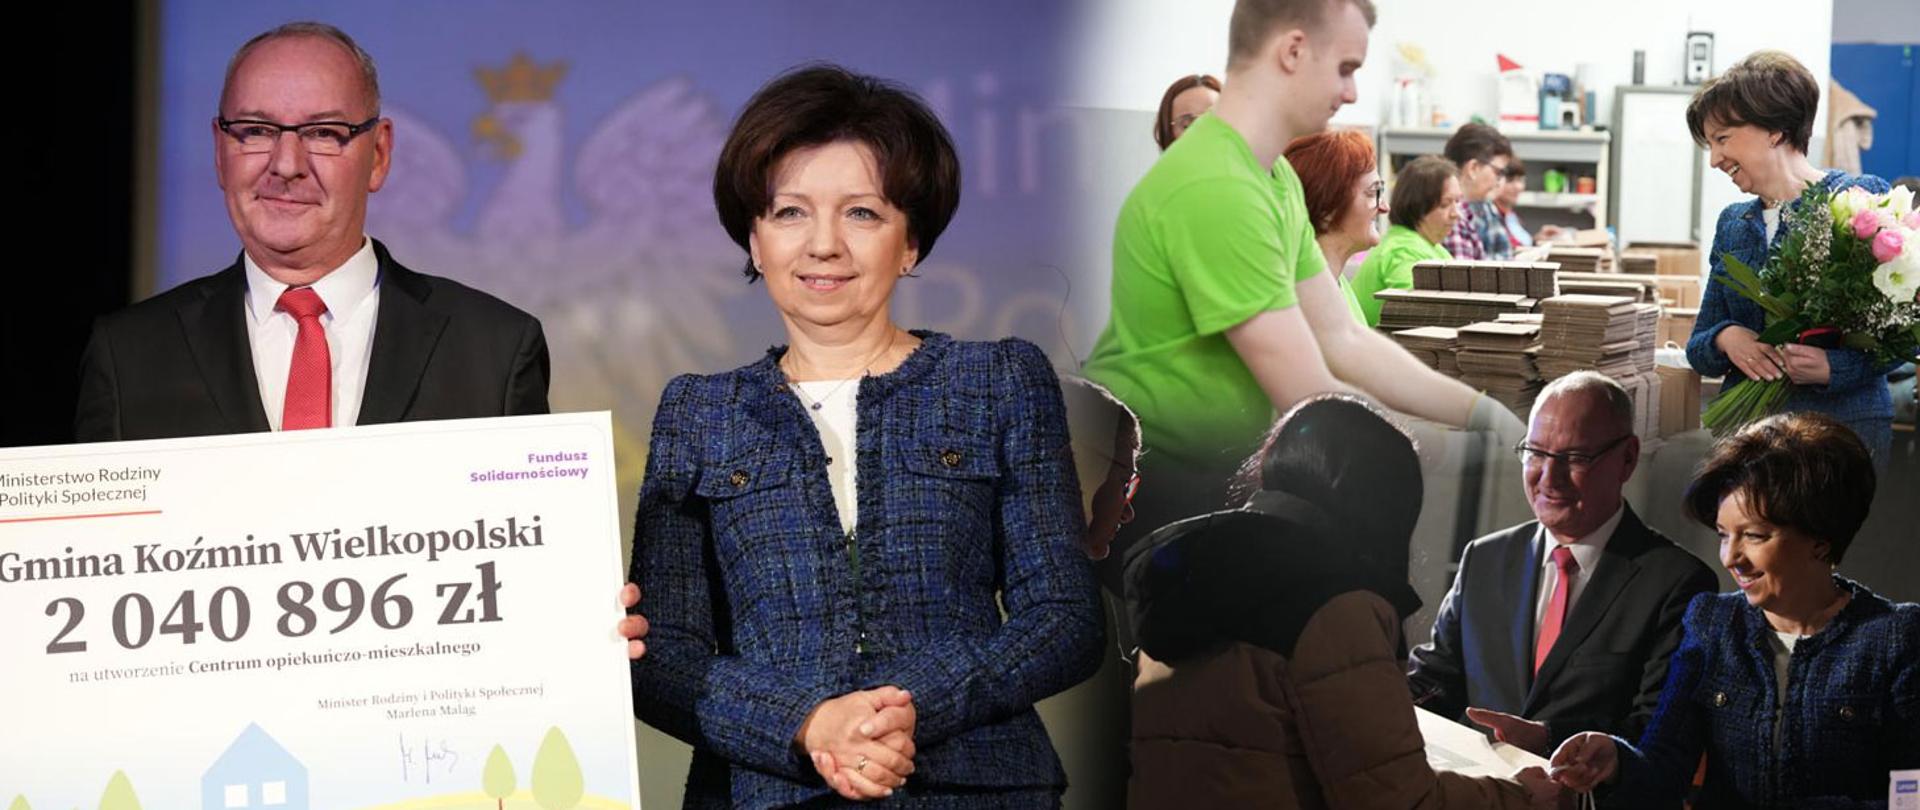 Collage zdjęć z wizyty Minister Marleny Maląg w Wielkopolsce